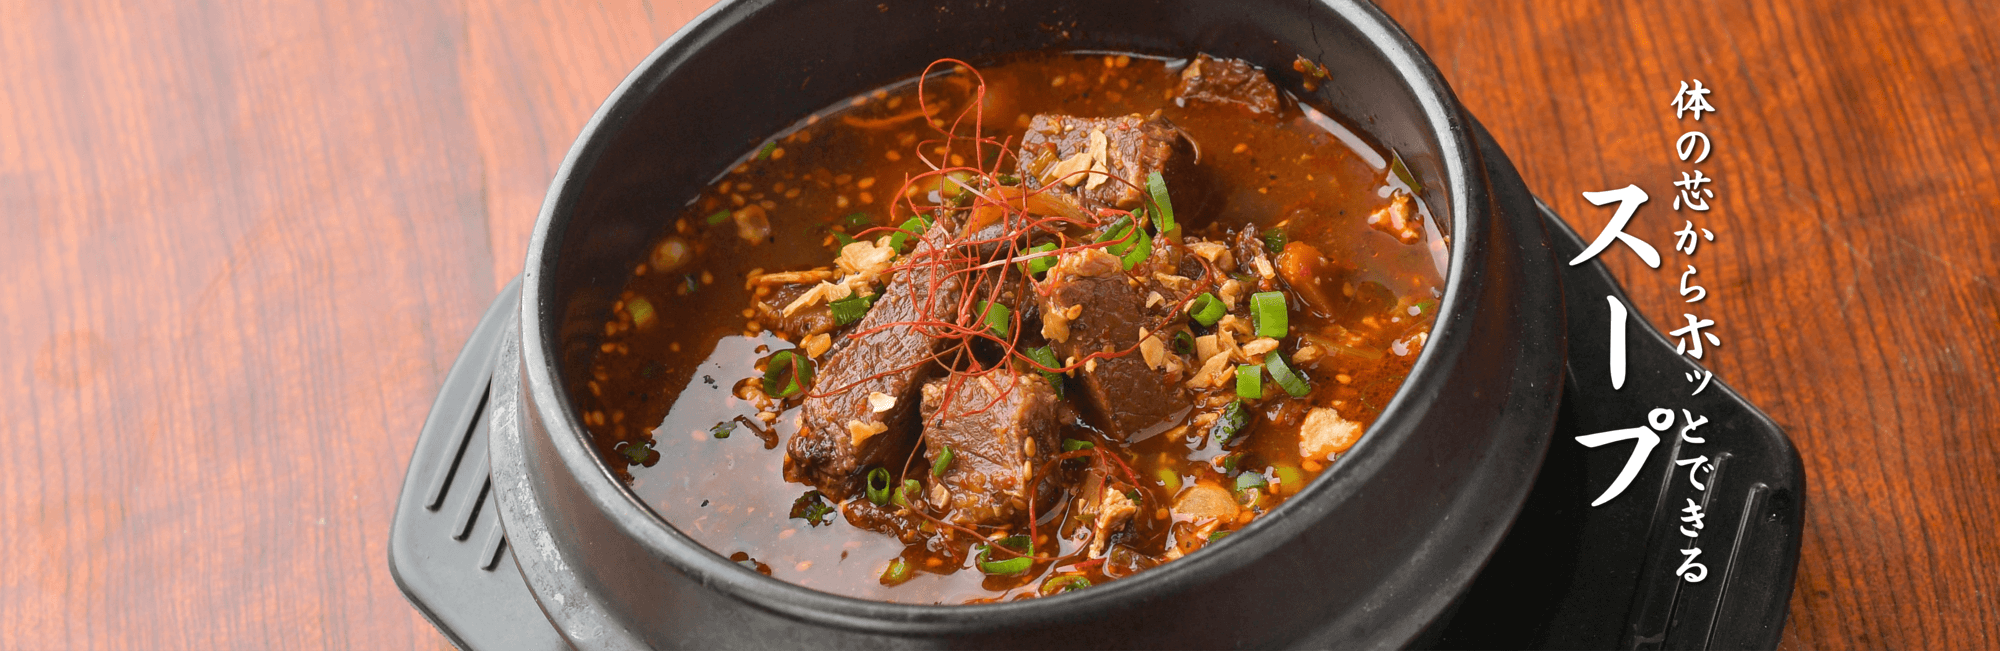 黒い鍋のテグタンスープの写真。真っ赤なスープにたくさんの牛肉とネギ。右側に体の芯からホッとできるスープの文字